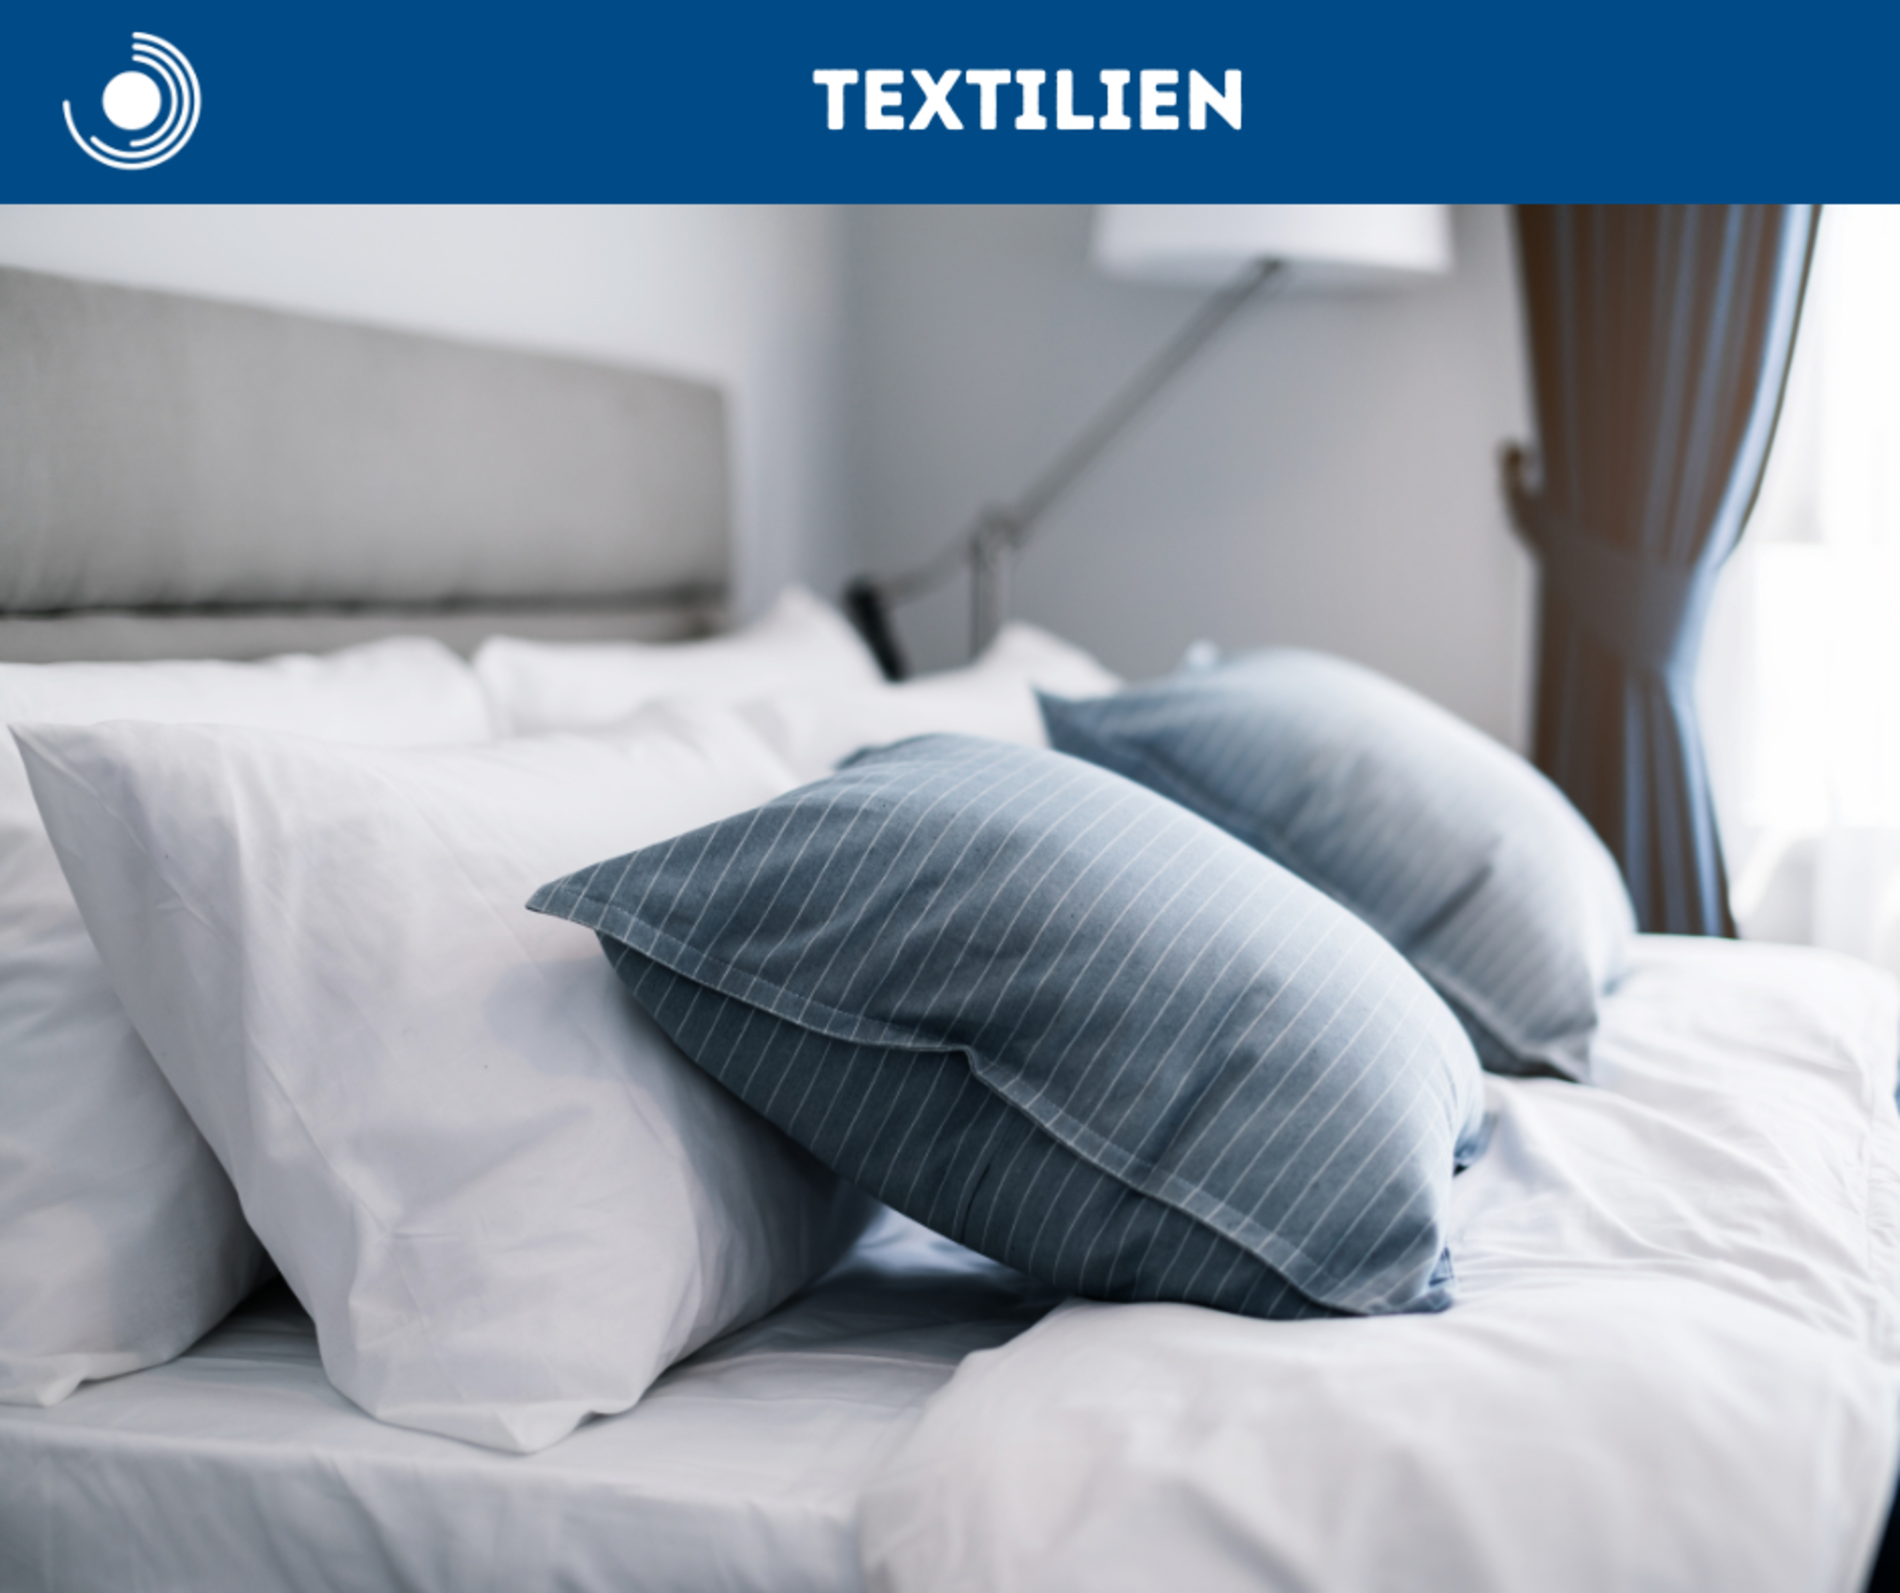 Textilien zu Bad, Wohnen, Hygiene - mit vielen preiswerten Markenprodukten